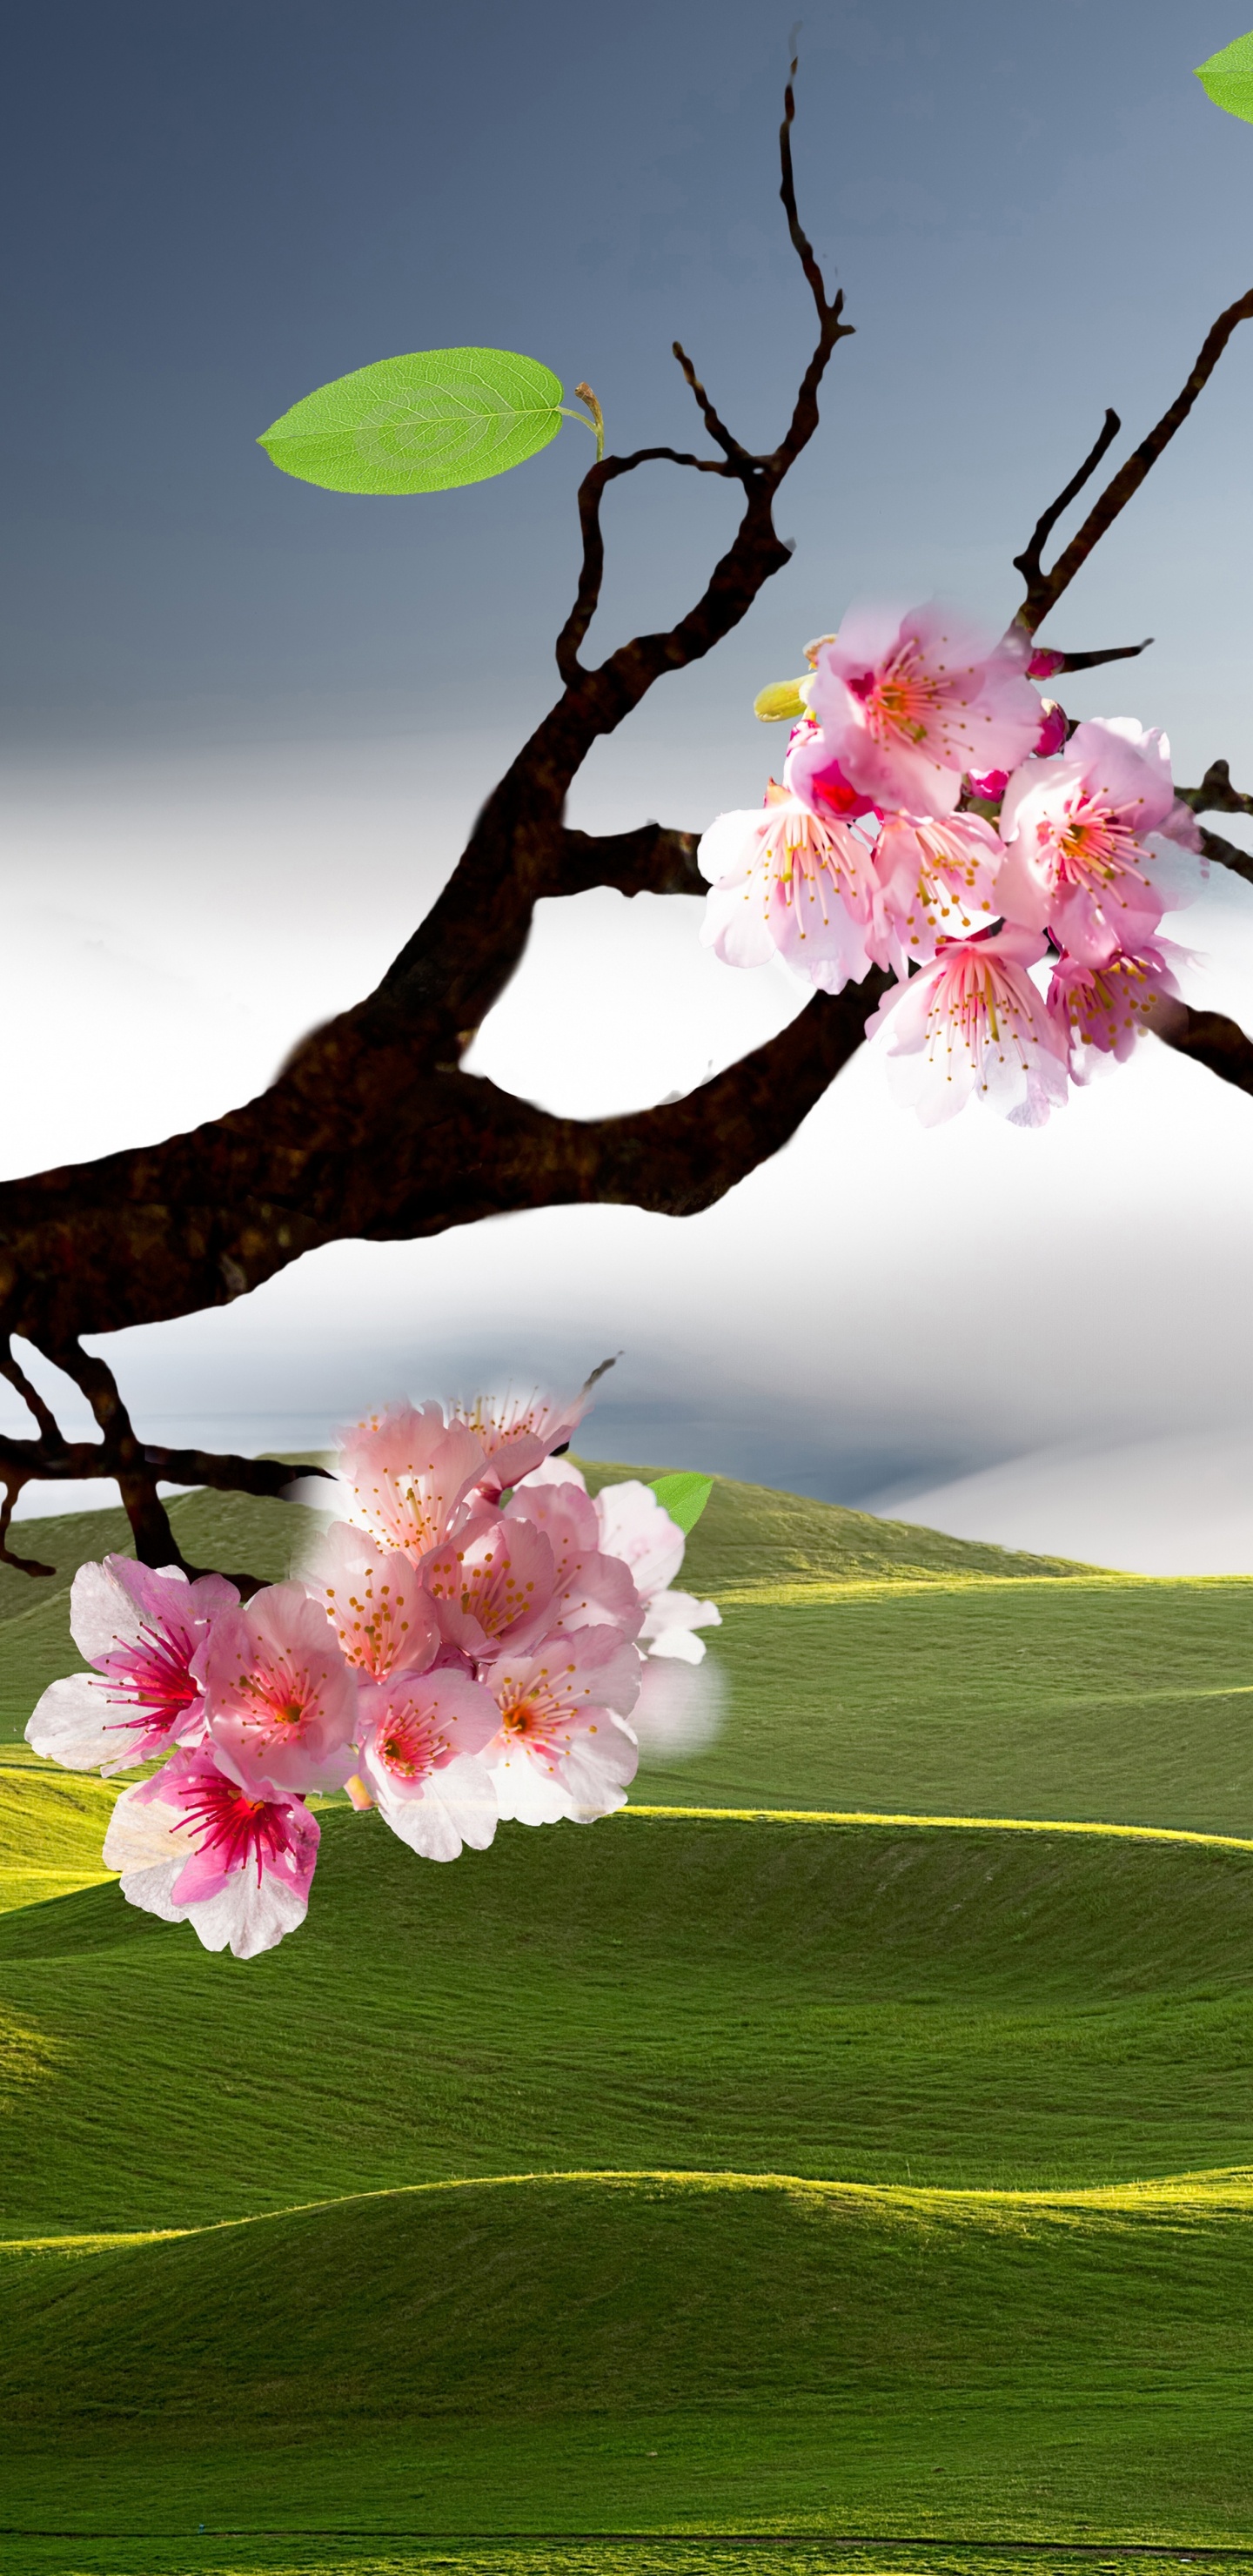 风景画, 樱花, 性质, 开花, 弹簧 壁纸 1440x2960 允许